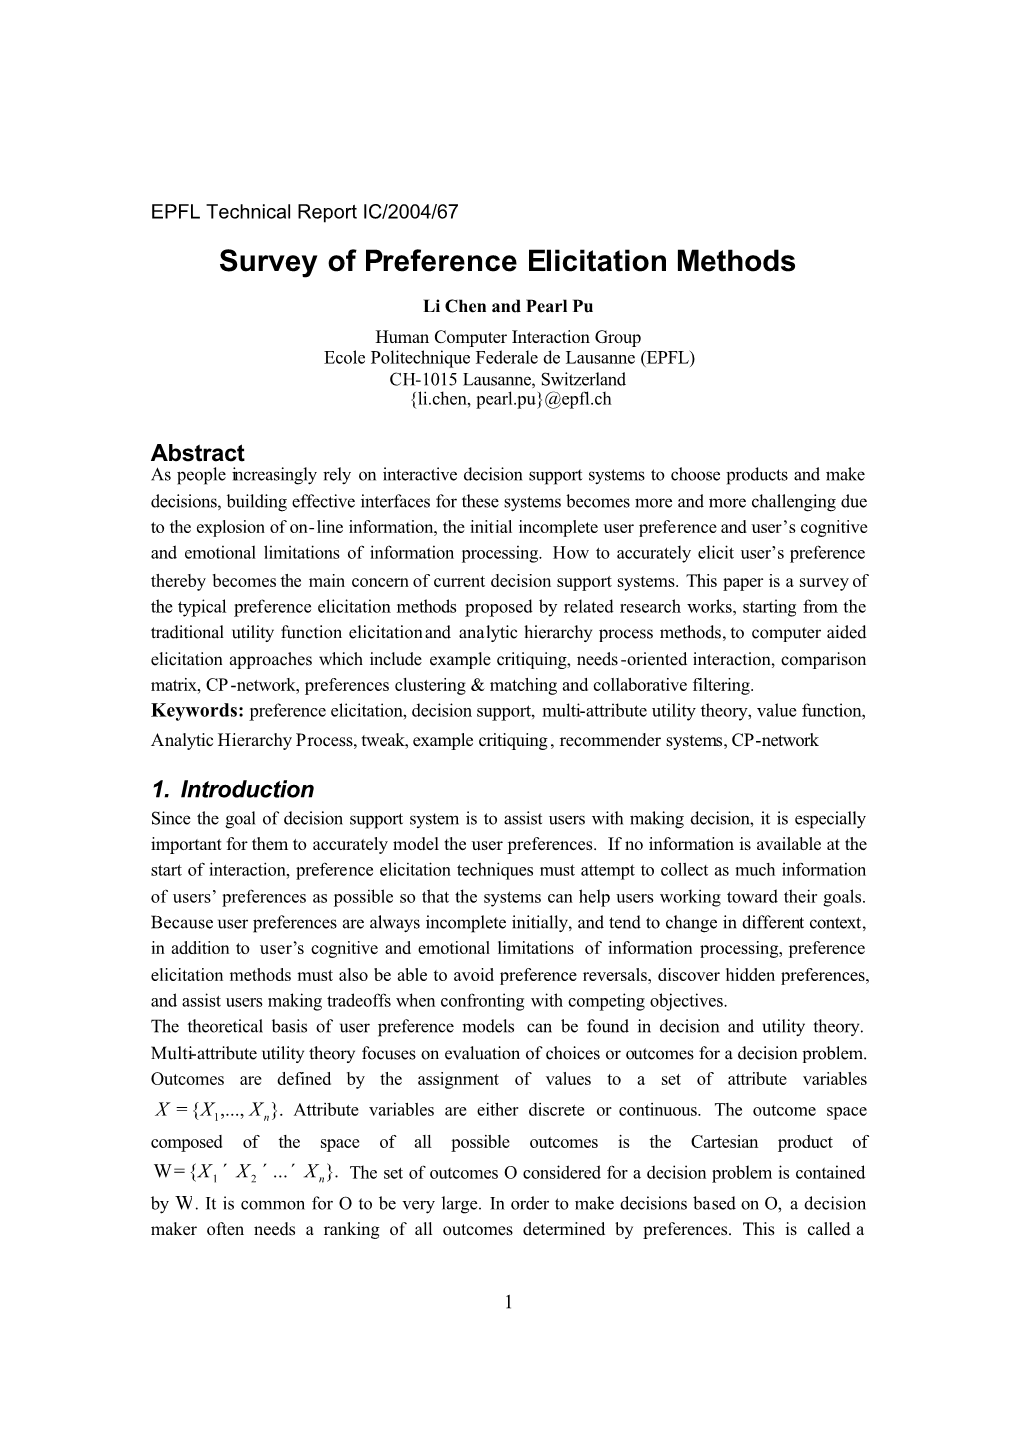 Survey of Preference Elicitation Methods